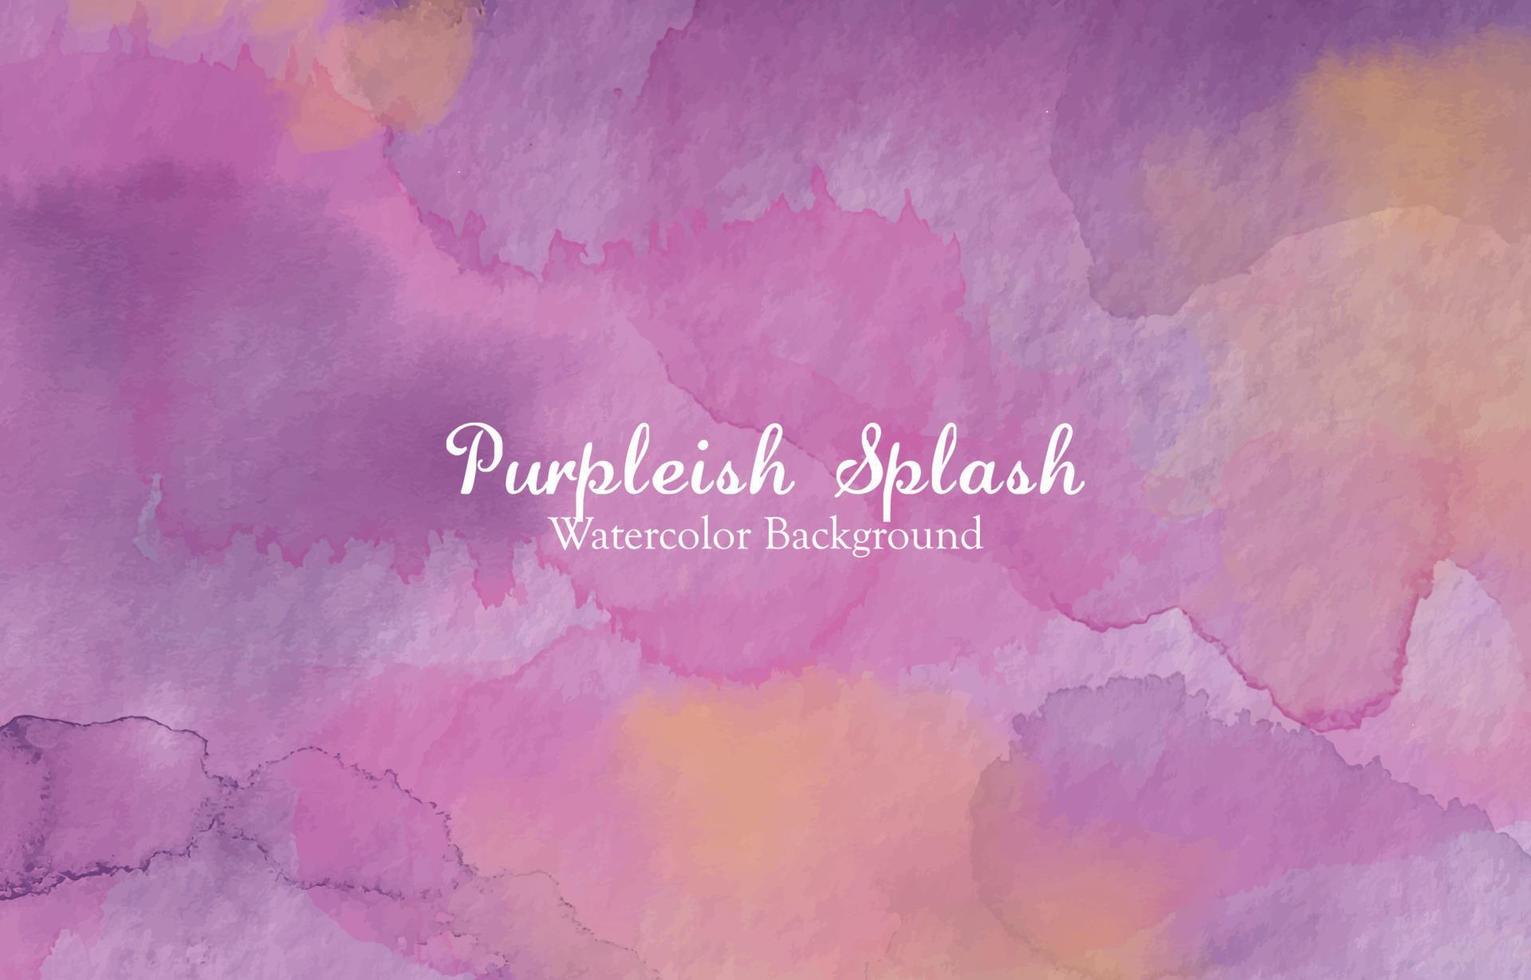 Purpleish Splash Watercolor Background vector